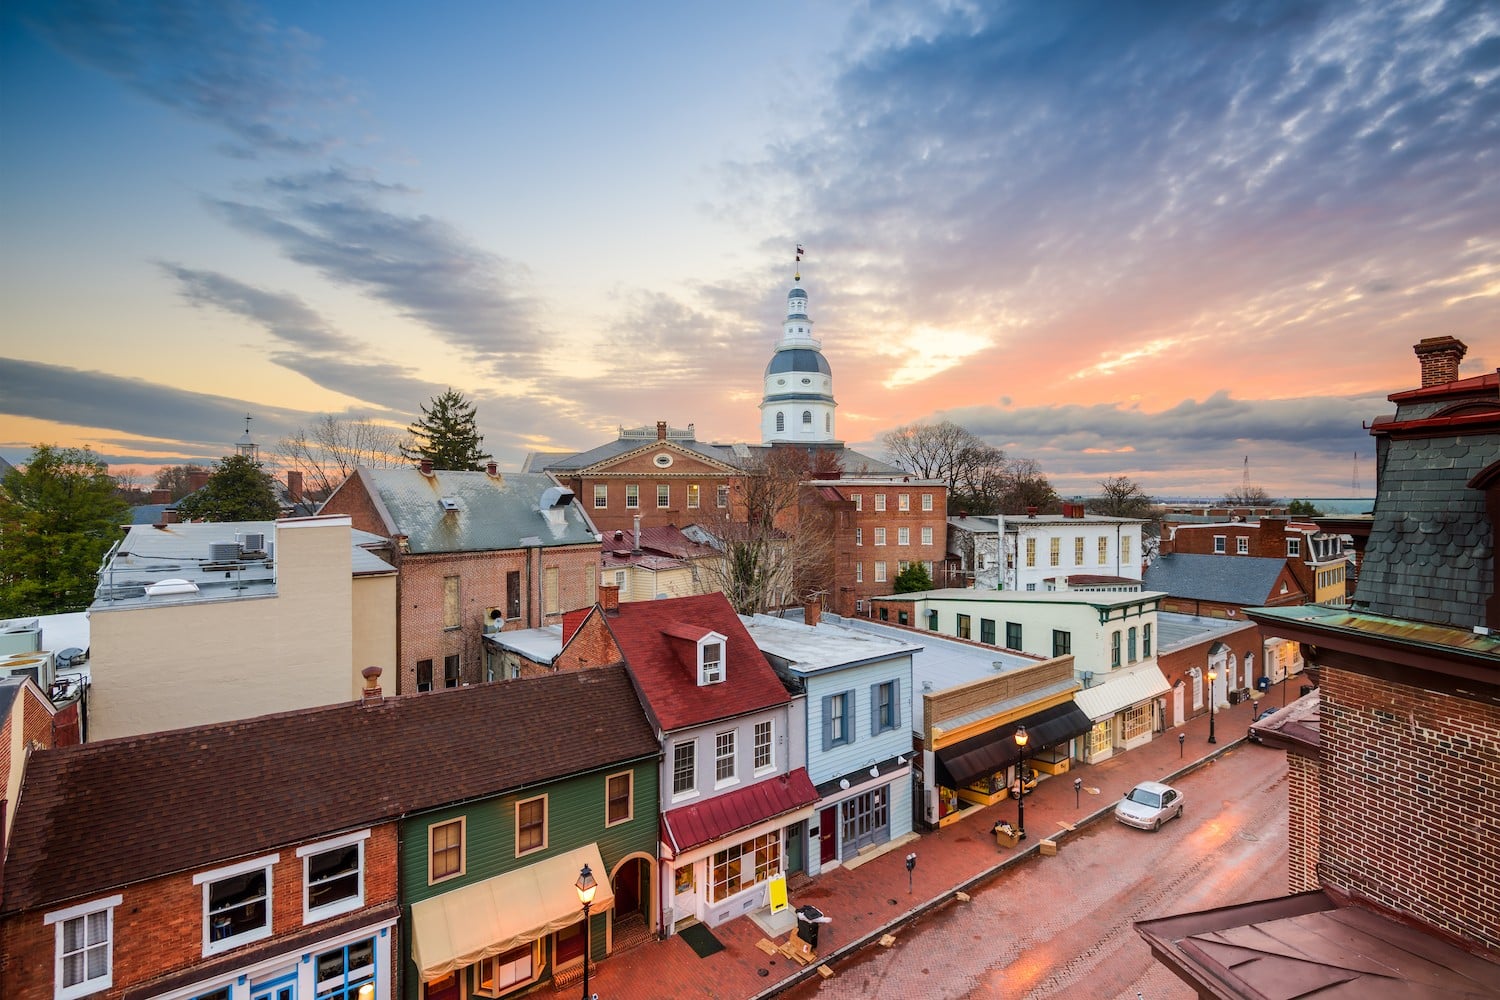 Viens visiter Annapolis, capitale du Maryland avec ton Visa J1 ! Mon